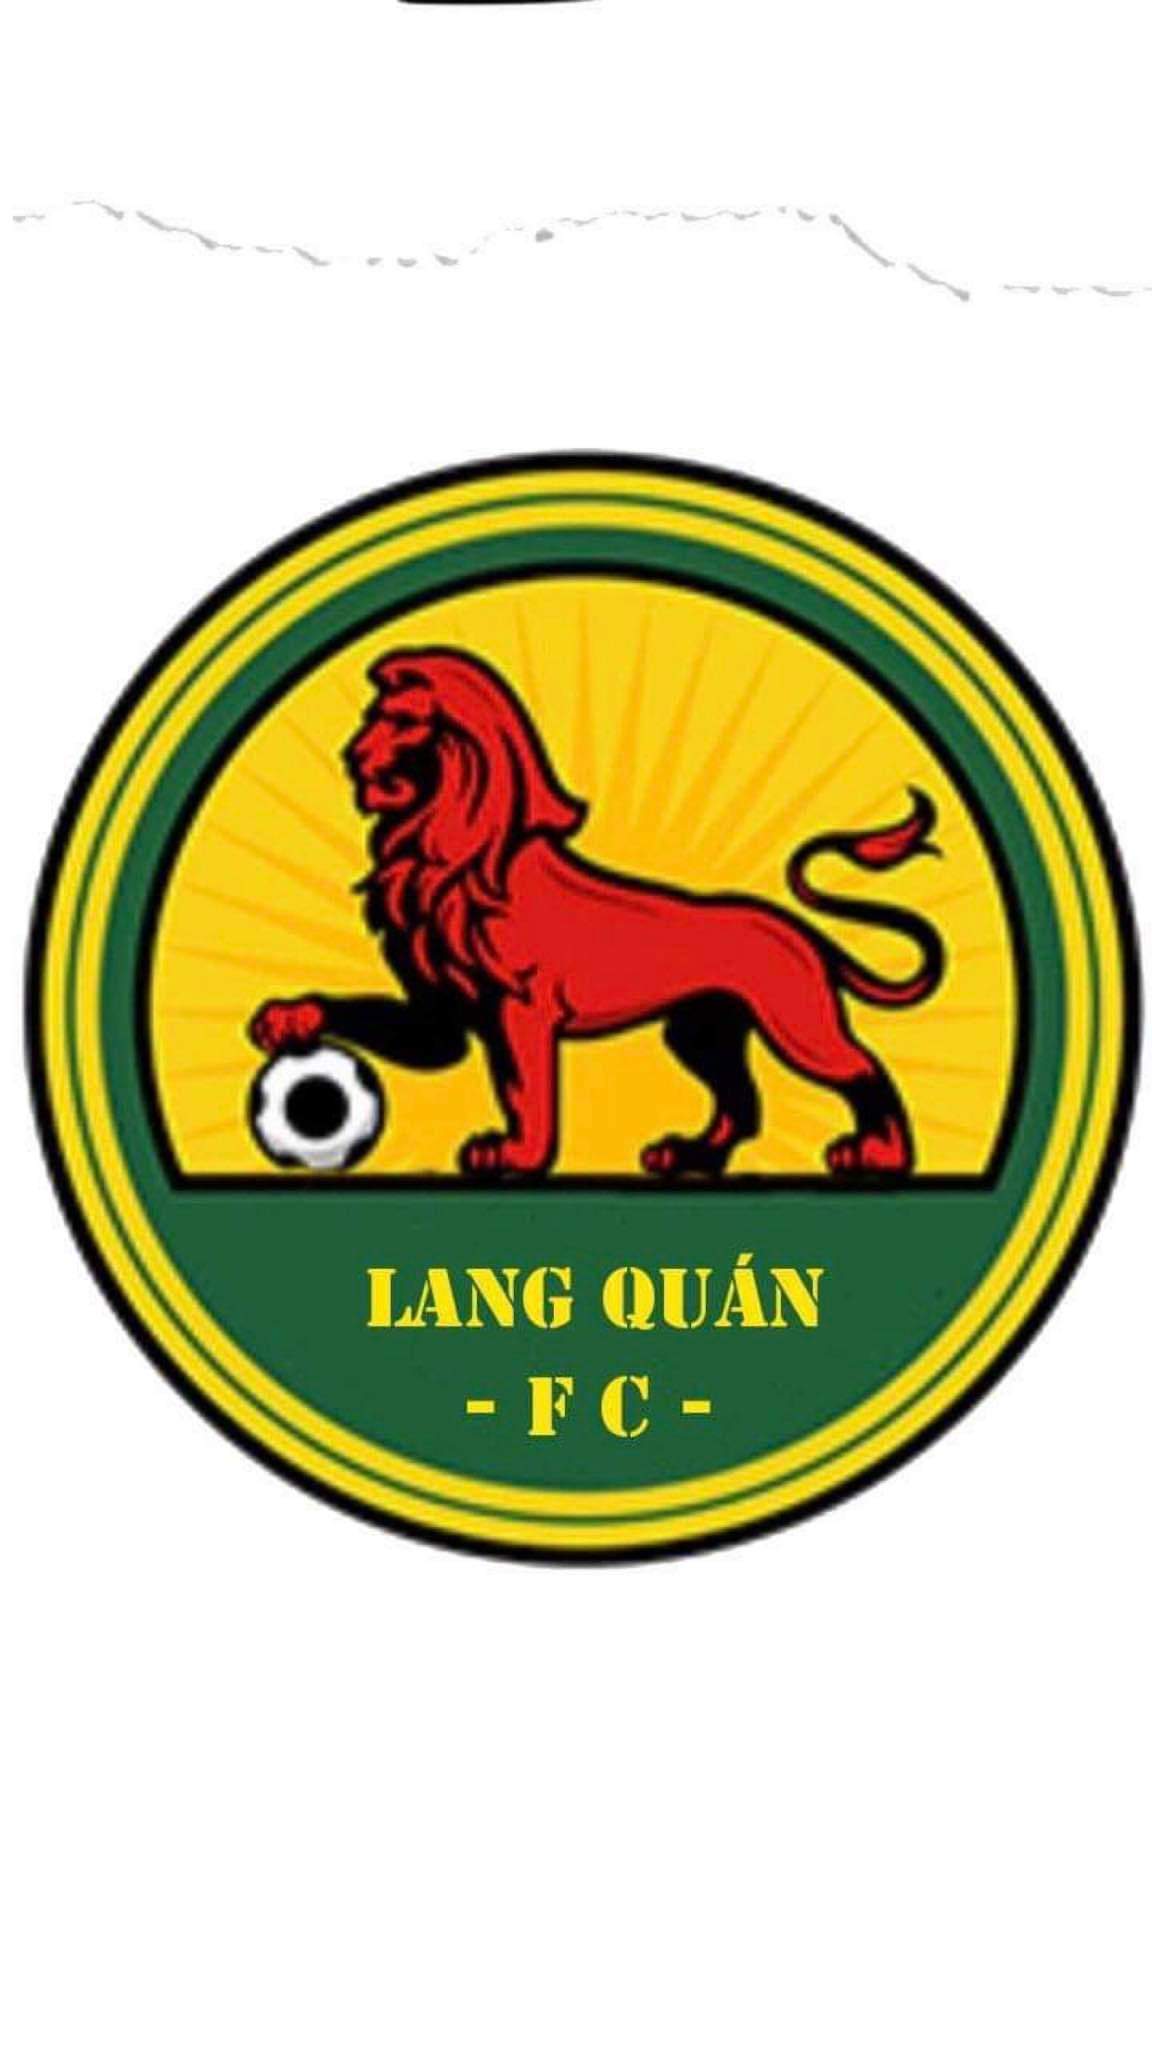 FC LANG QUÁN